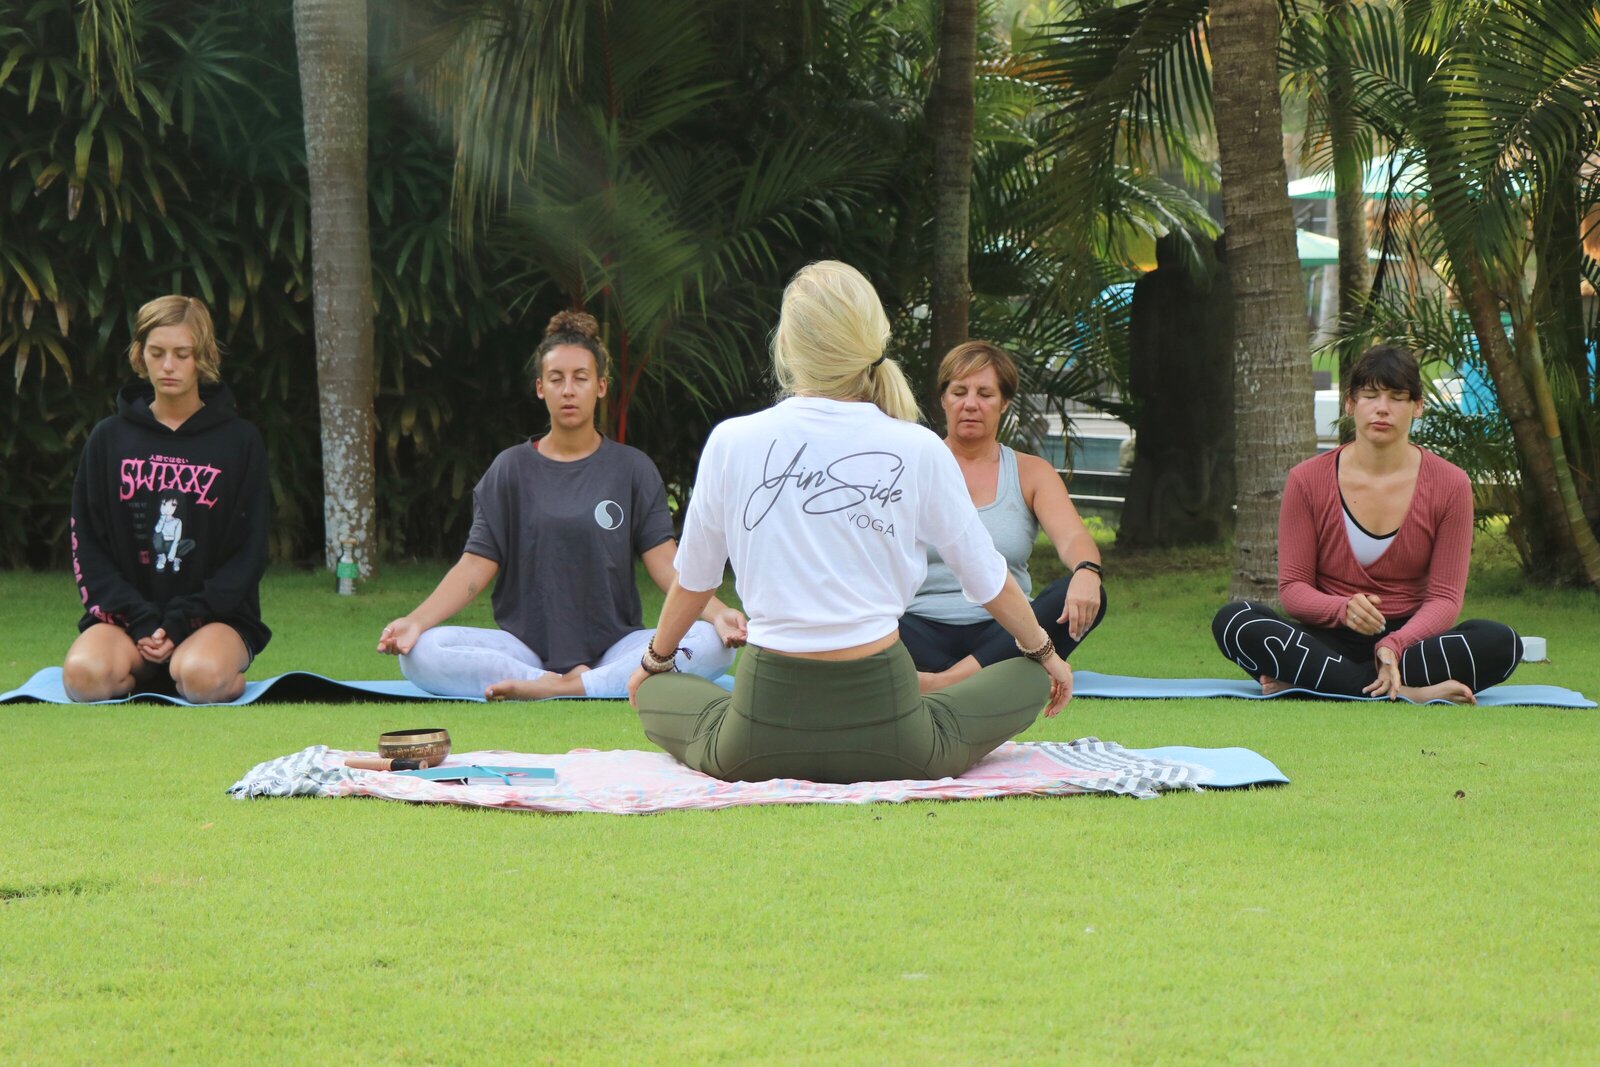 sunrise nature meditation with yinside yoga bali retreats